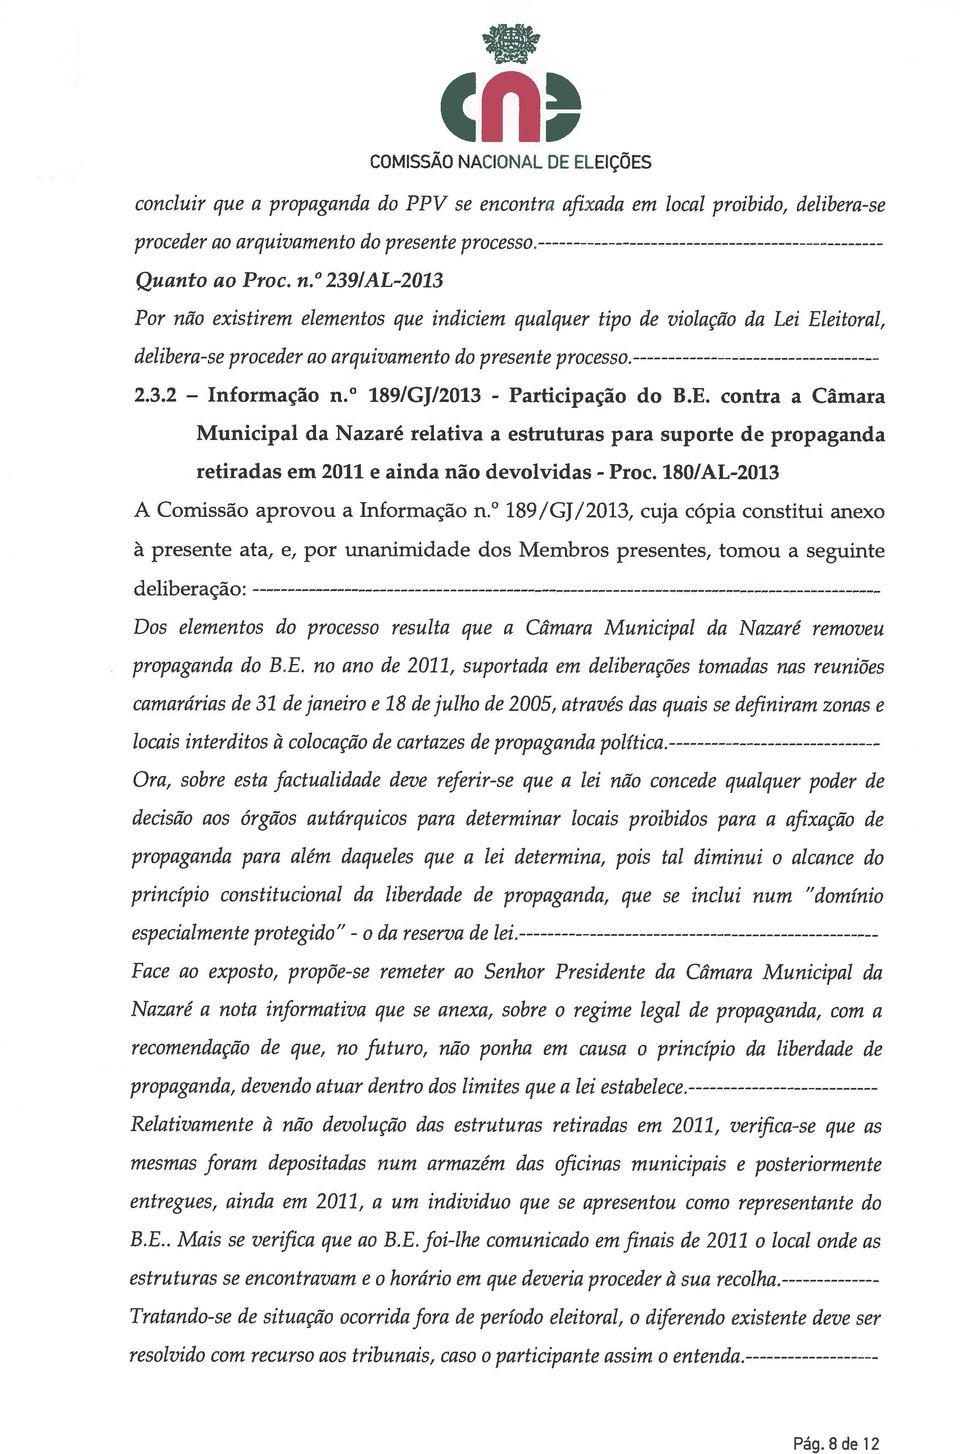 1891GJ12013 - Participação do B.E. contra a Câmara Municipal da Nazaré relativa a estruturas para suporte de propaganda retiradas em 2011 e ainda não devolvidas - Proc.